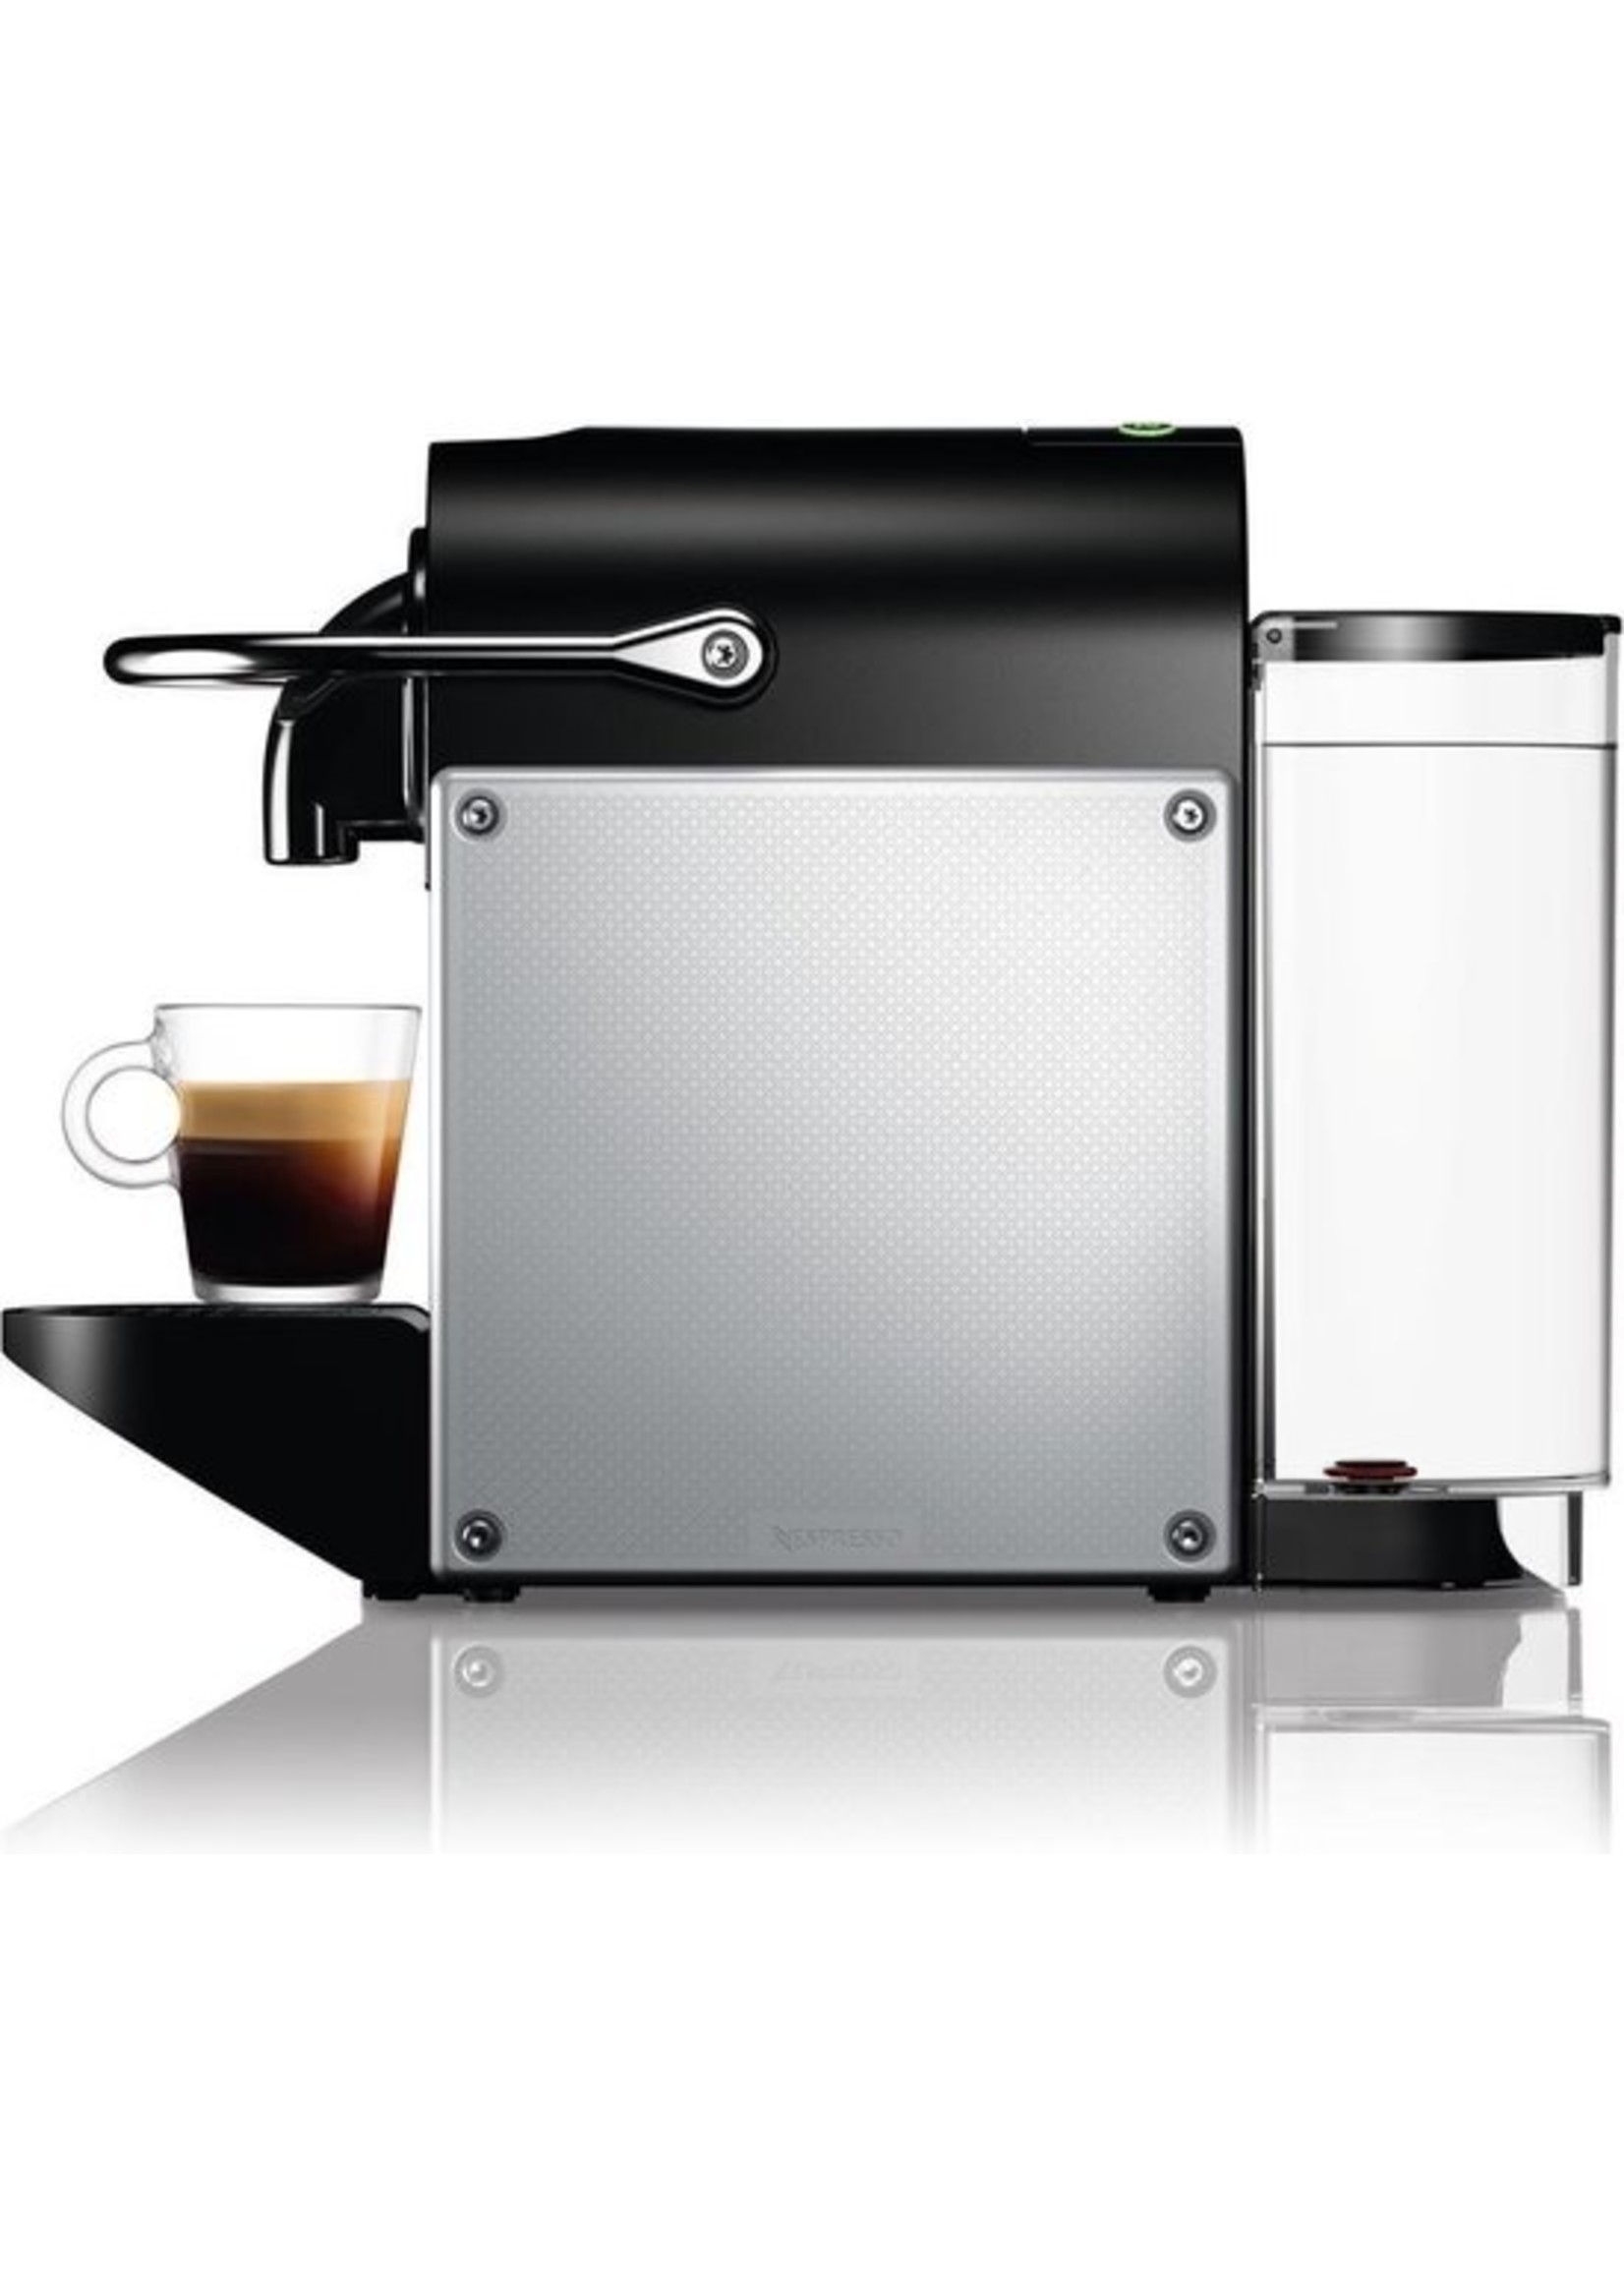 DeLonghi DeLonghi EN124.S Aanrechtblad Espressomachine 0,7 l Half automatisch